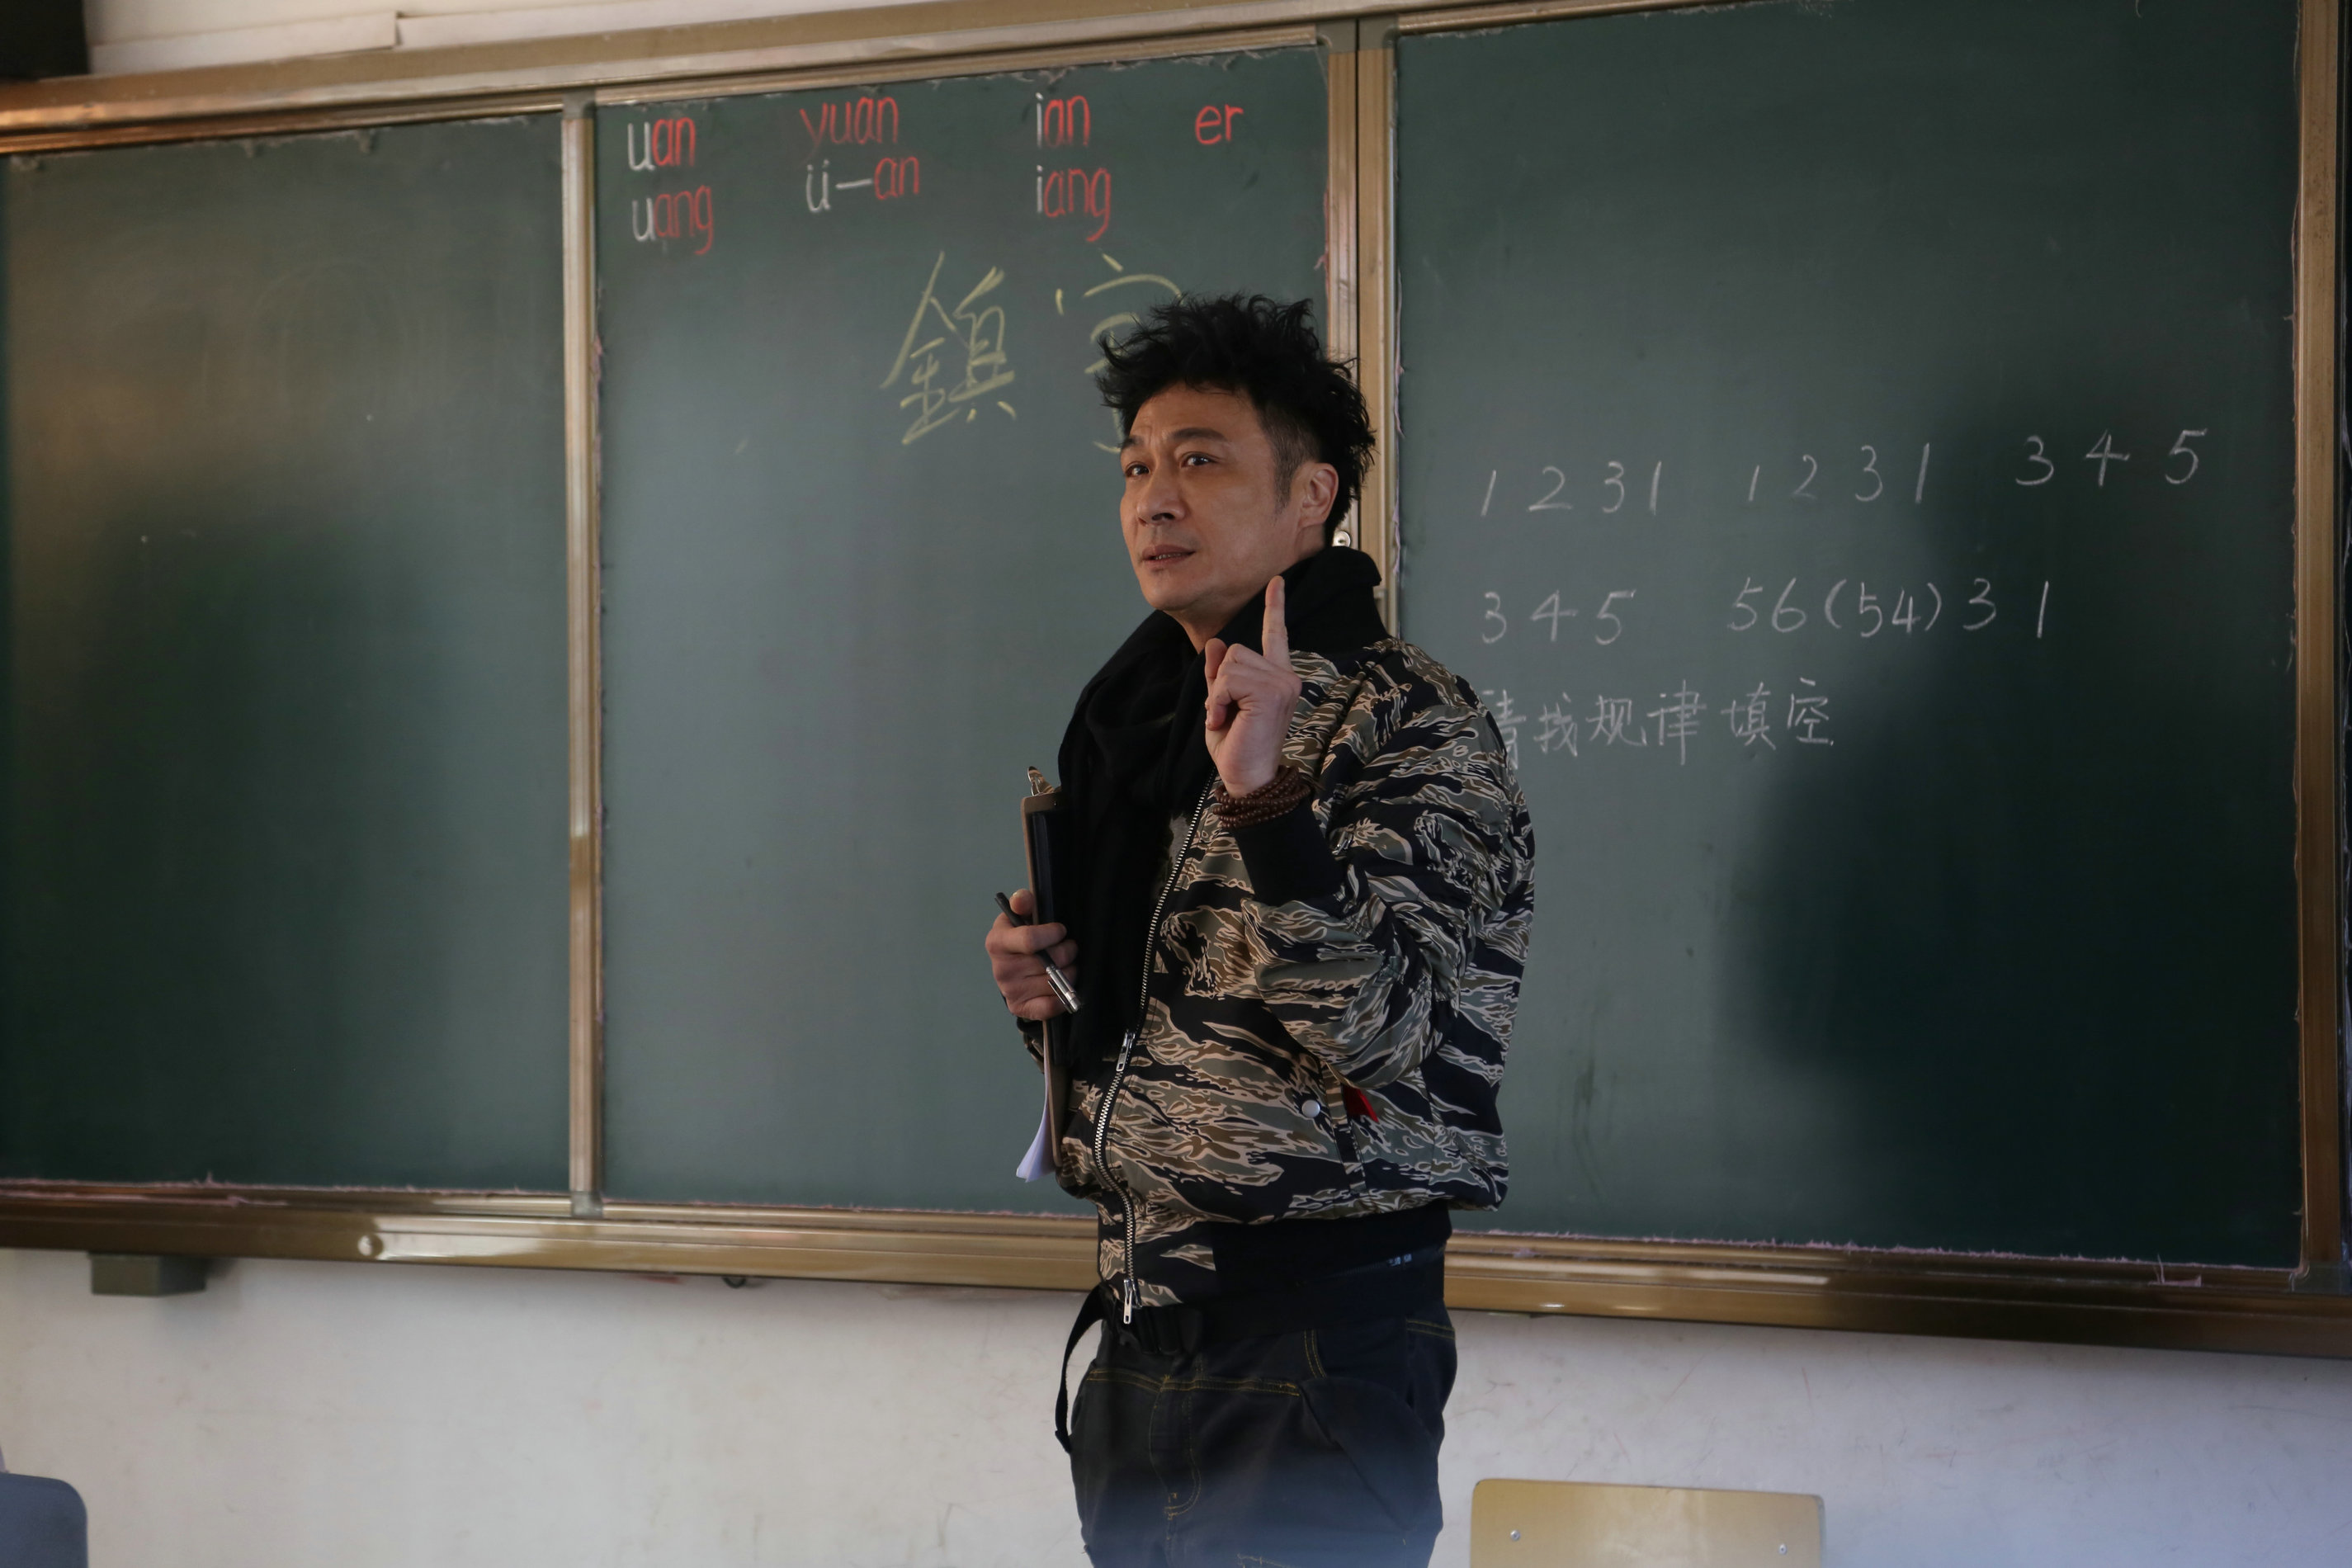 《闪亮的爸爸》第二季首播 “鸡叫”老师吴镇宇鸡年登场 - 中国日报网